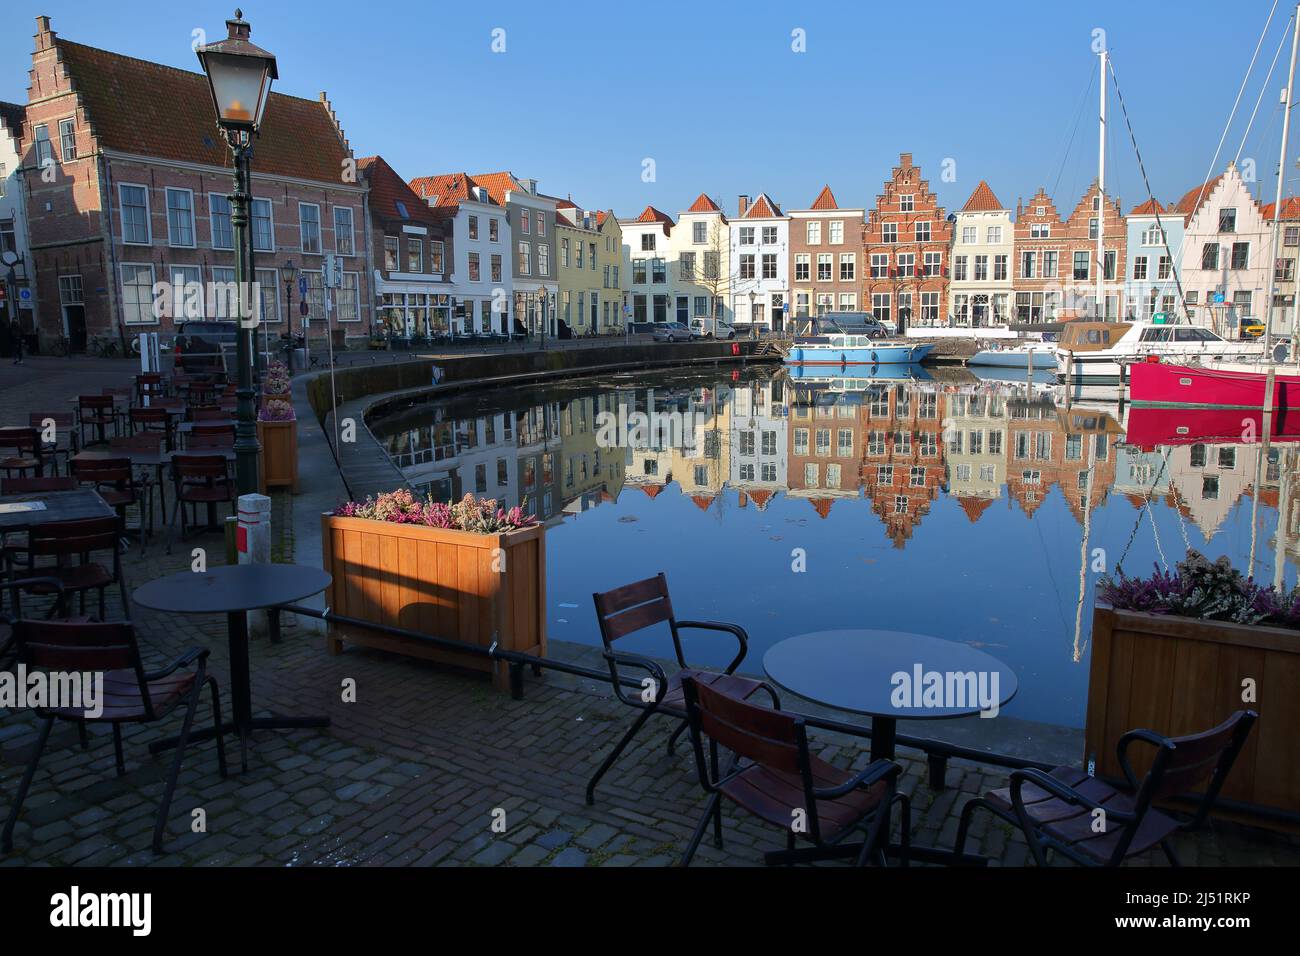 Réflexions de maisons médiévales historiques et de bateaux à voile amarrés à Goes Harbour, Goes, Zeeland, pays-Bas Banque D'Images